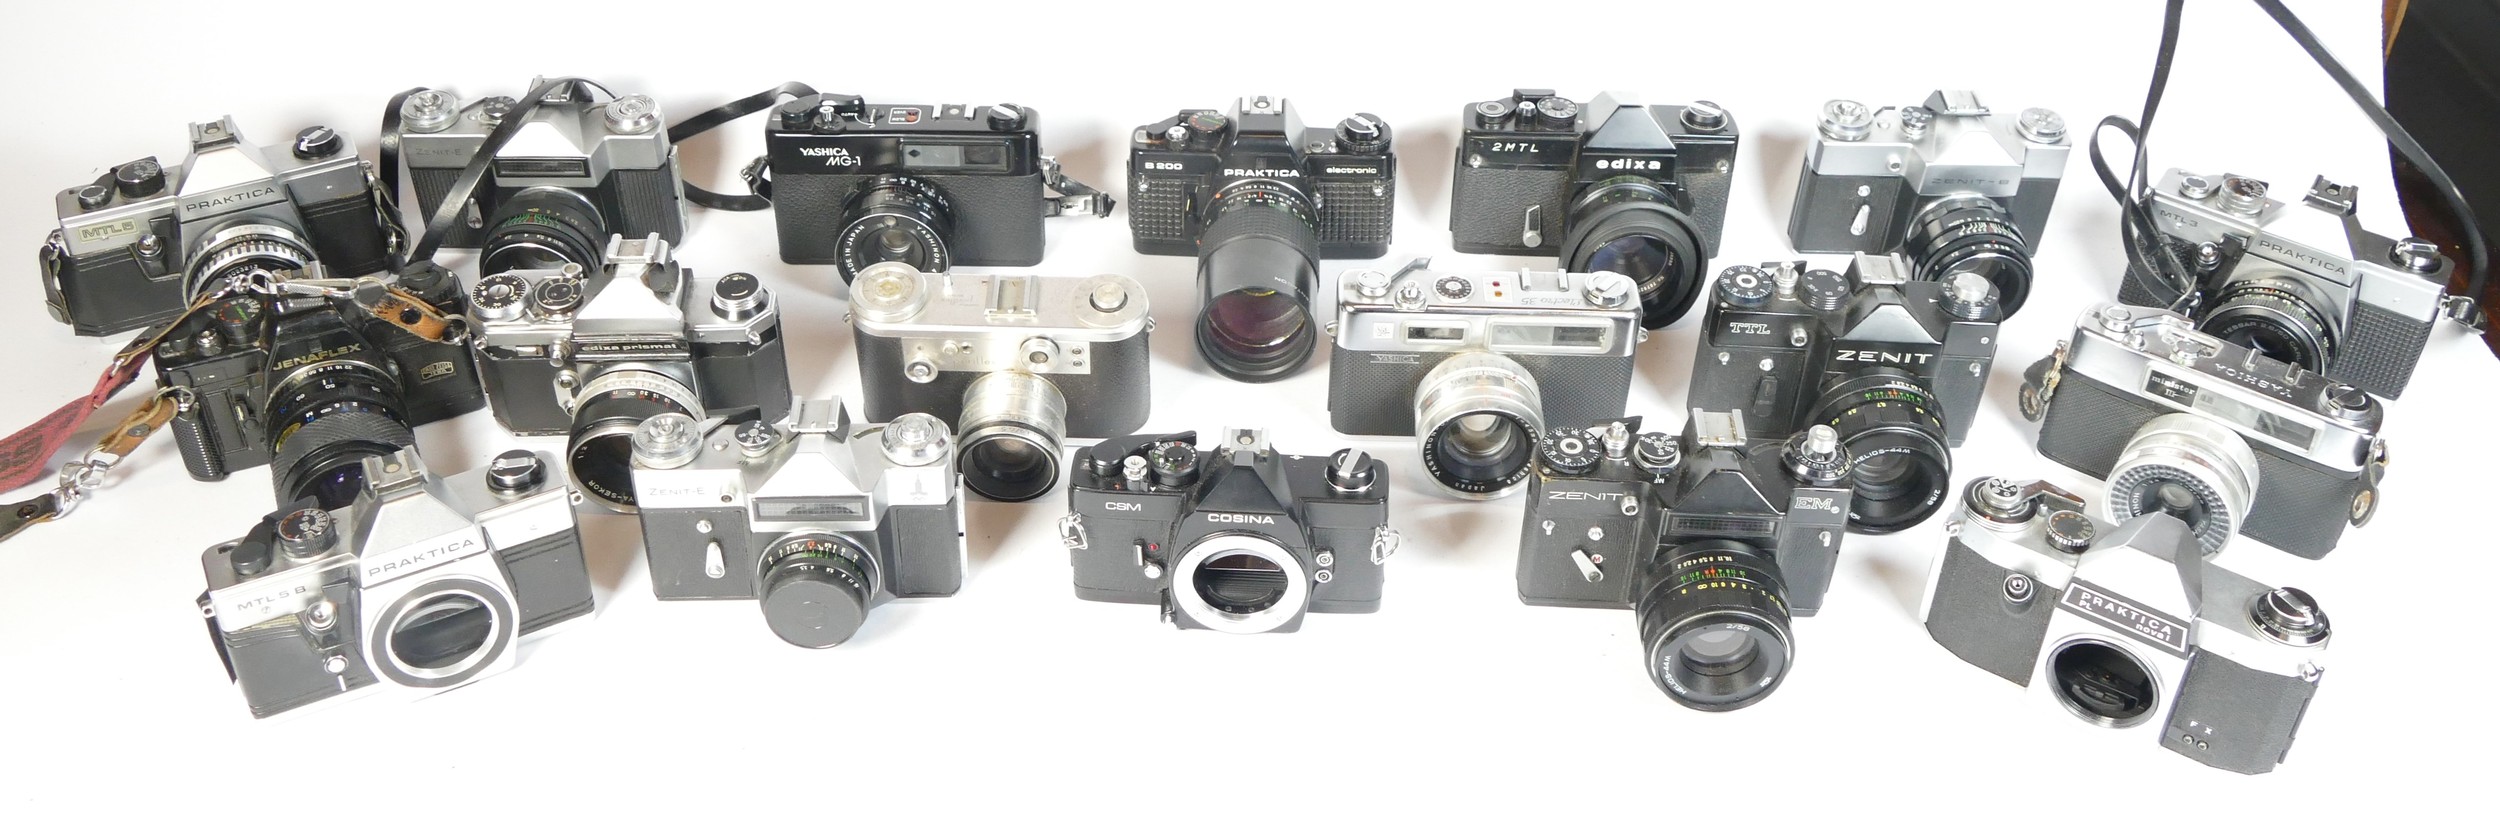 Eighteen SLR vintage film cameras to include a Praktica MTL5B, a Zenit EM, a Praktica B200 and a